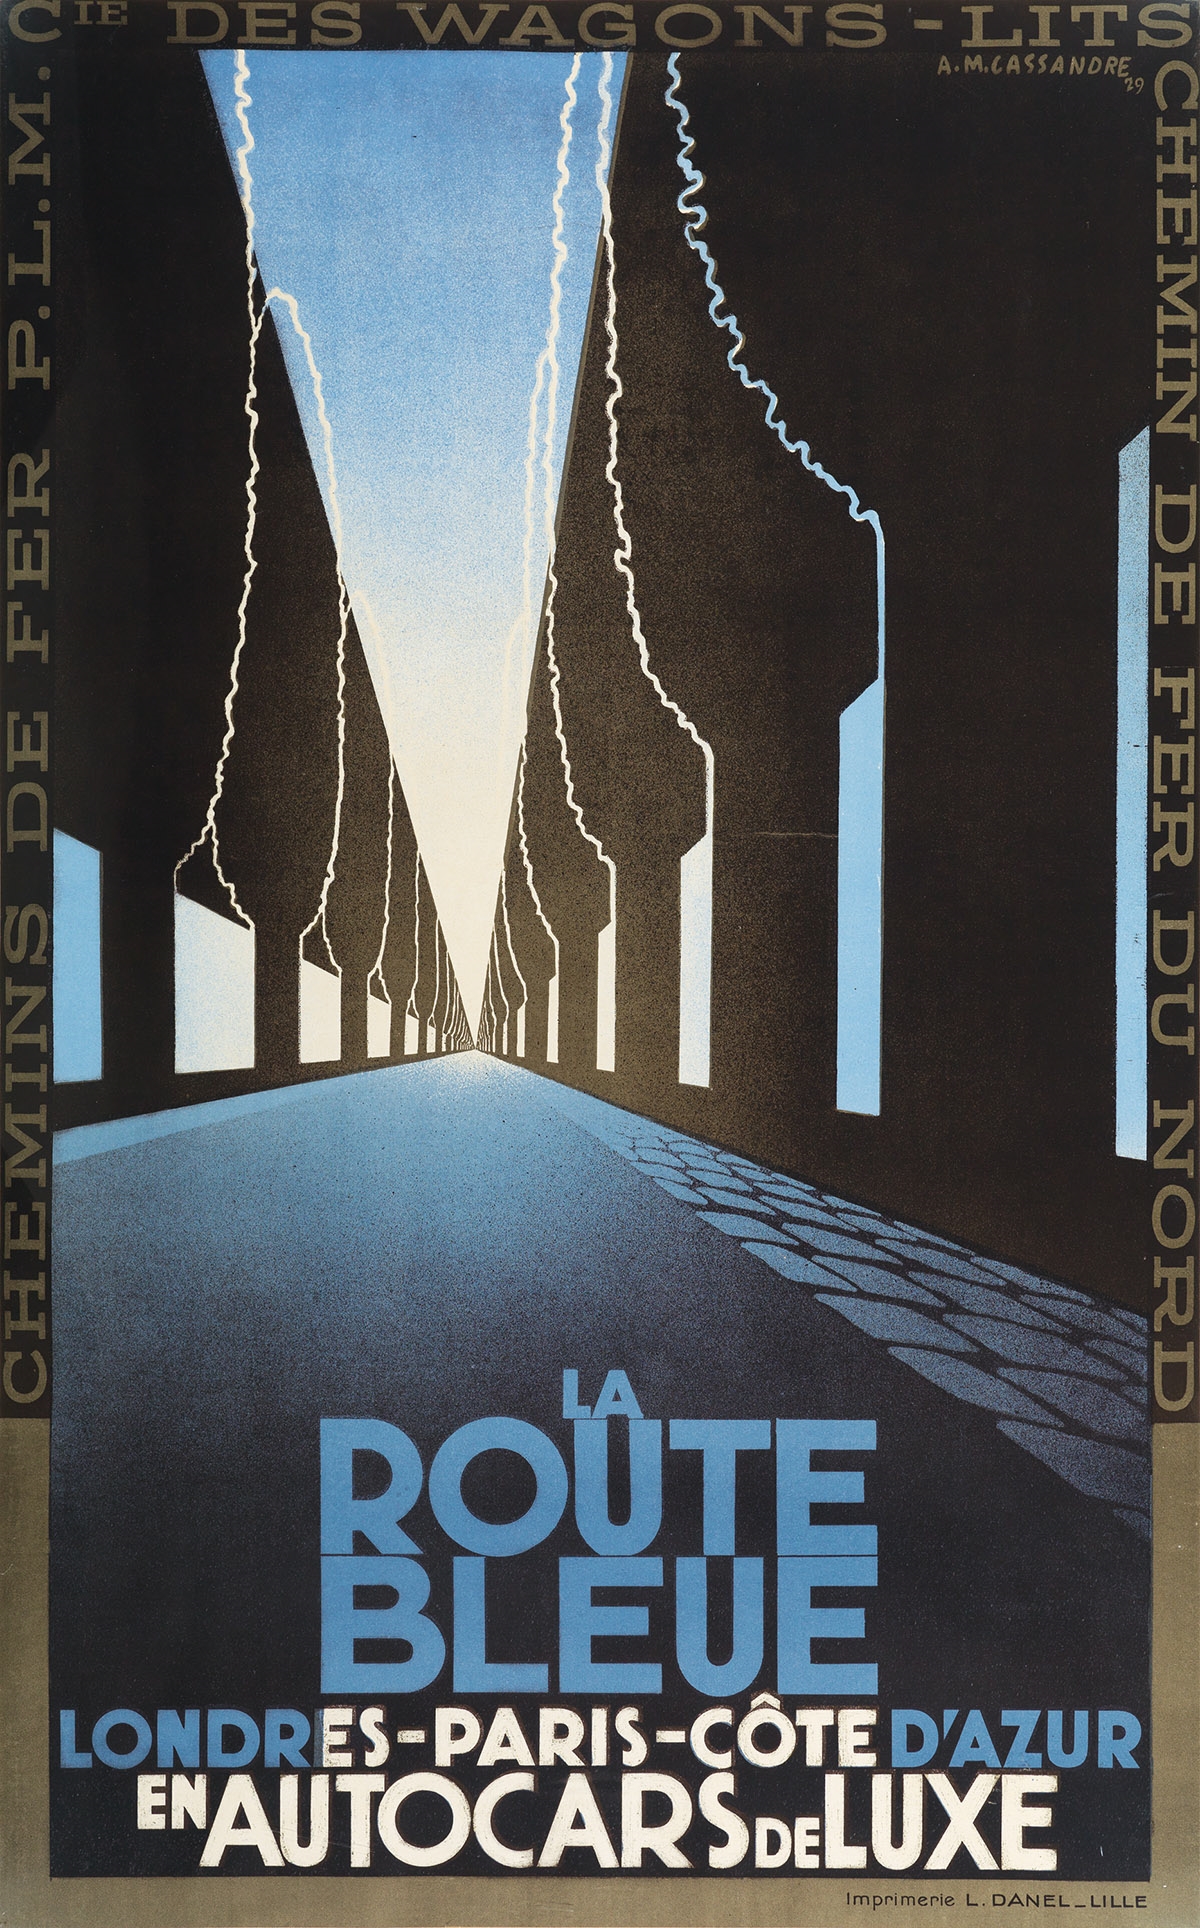 l'Etoile du Nord by A.M. Cassandre, 1929